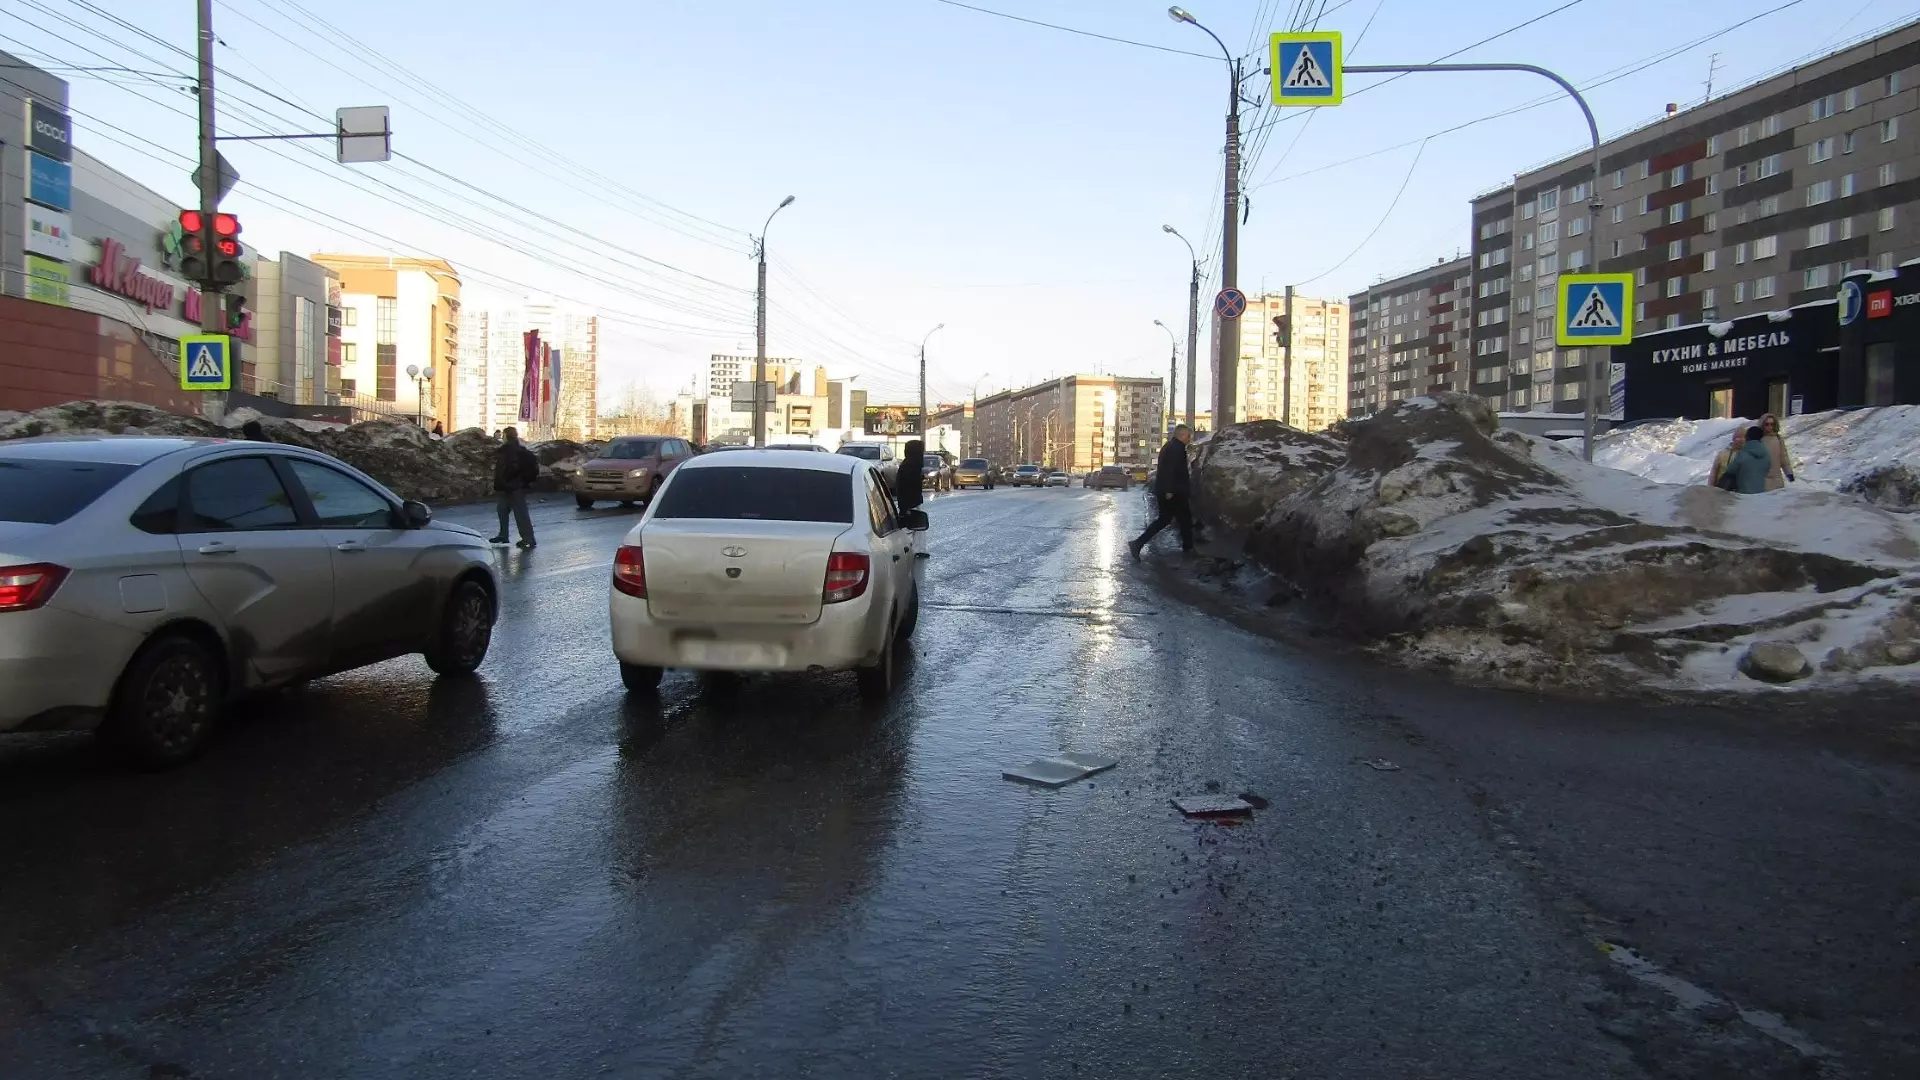 Сразу двух пешеходов сбили за час в Ижевске